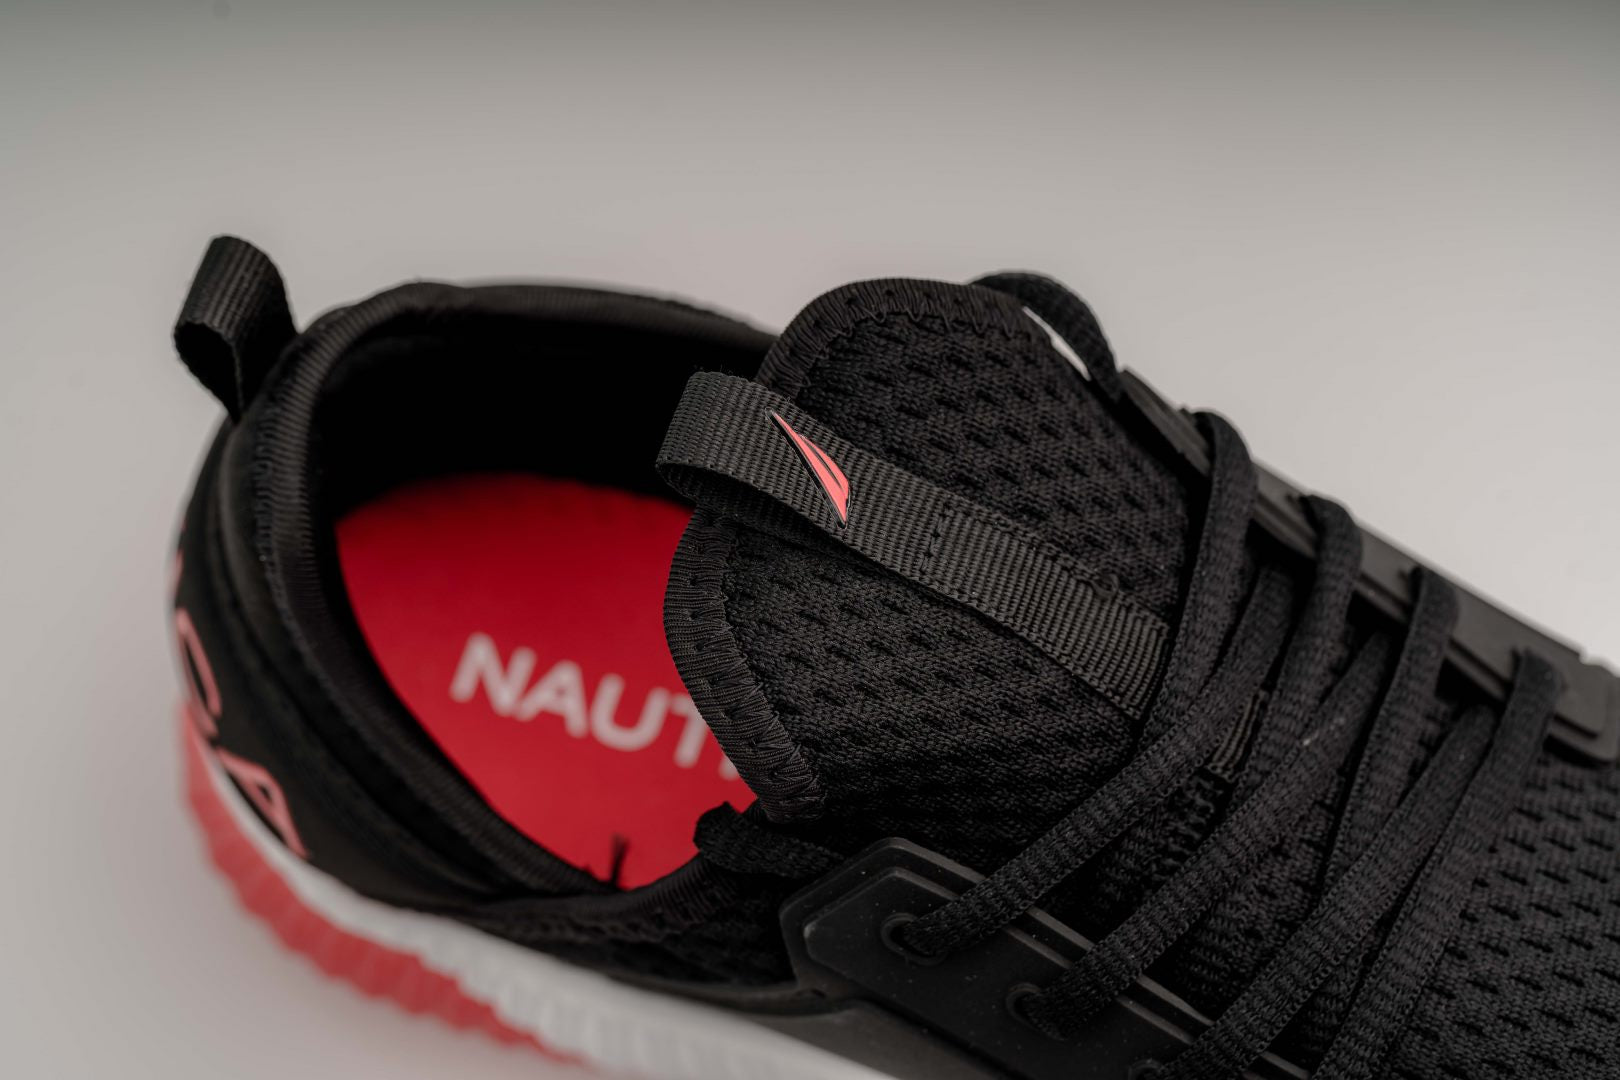 Nautica Aport - Zapatillas deportivas para hombre, color negro